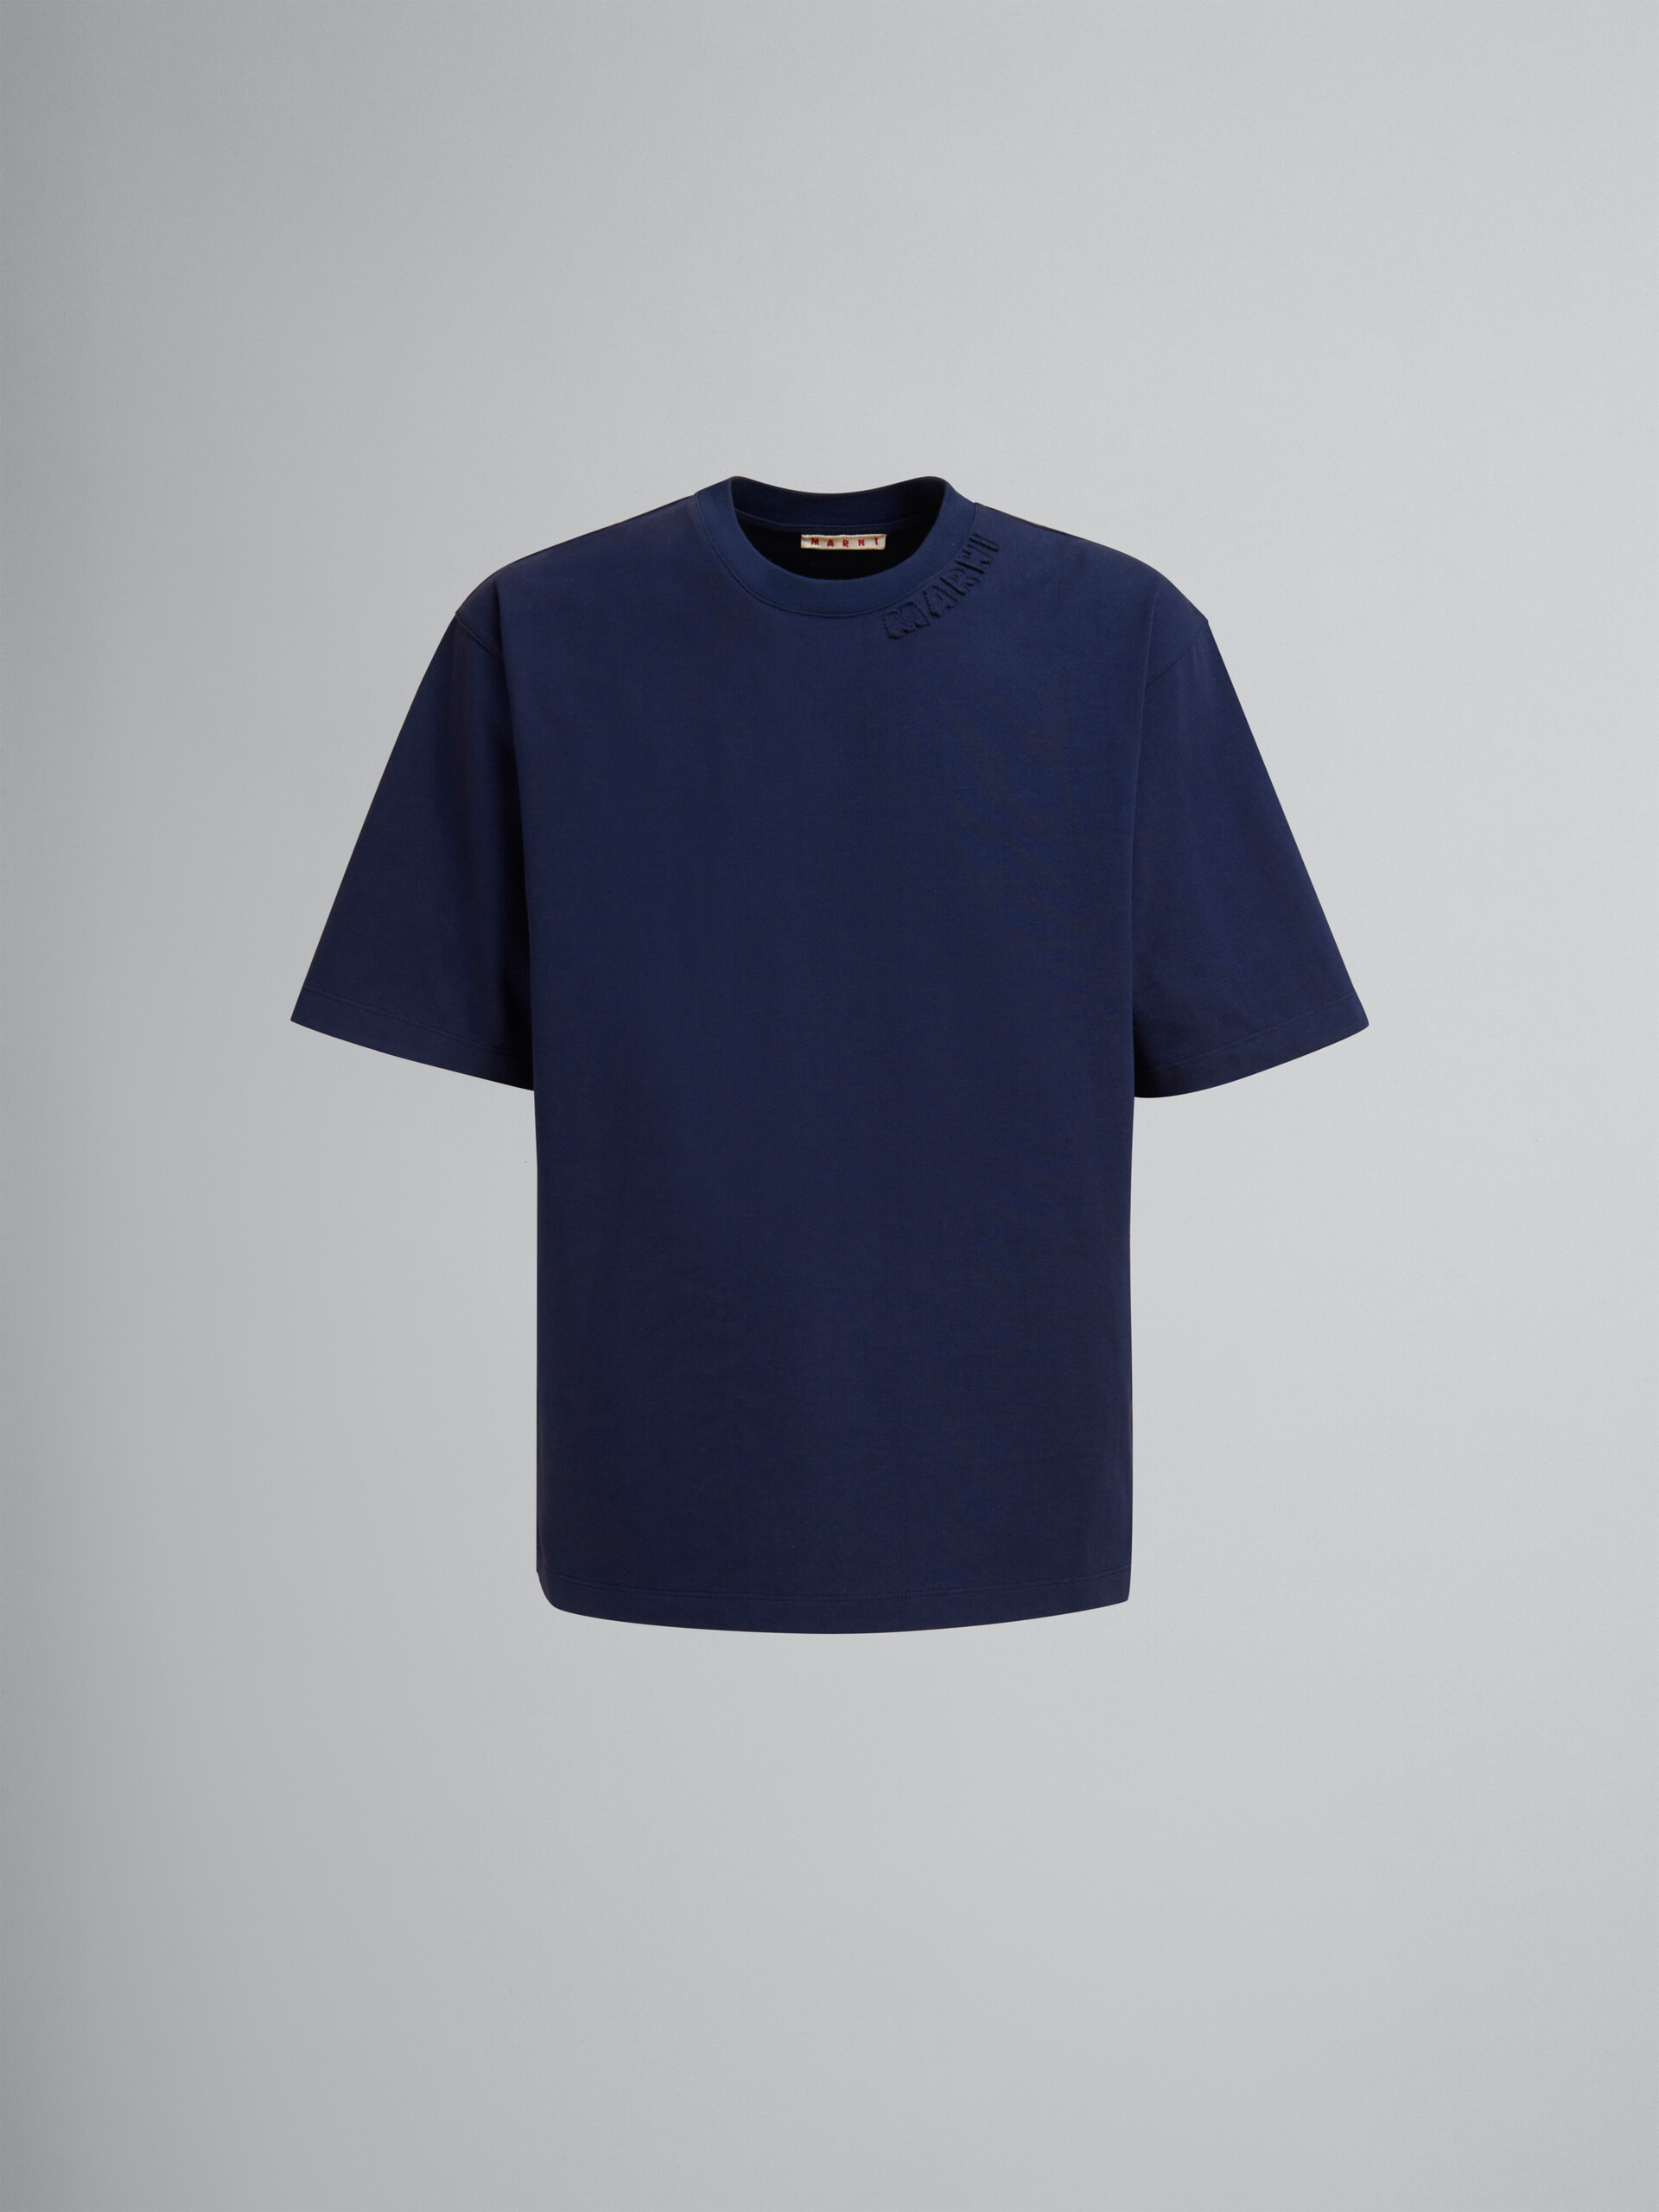 ライトブルー マルニパッチ付き オーガニックコットン製オーバーサイズTシャツ - Tシャツ - Image 1